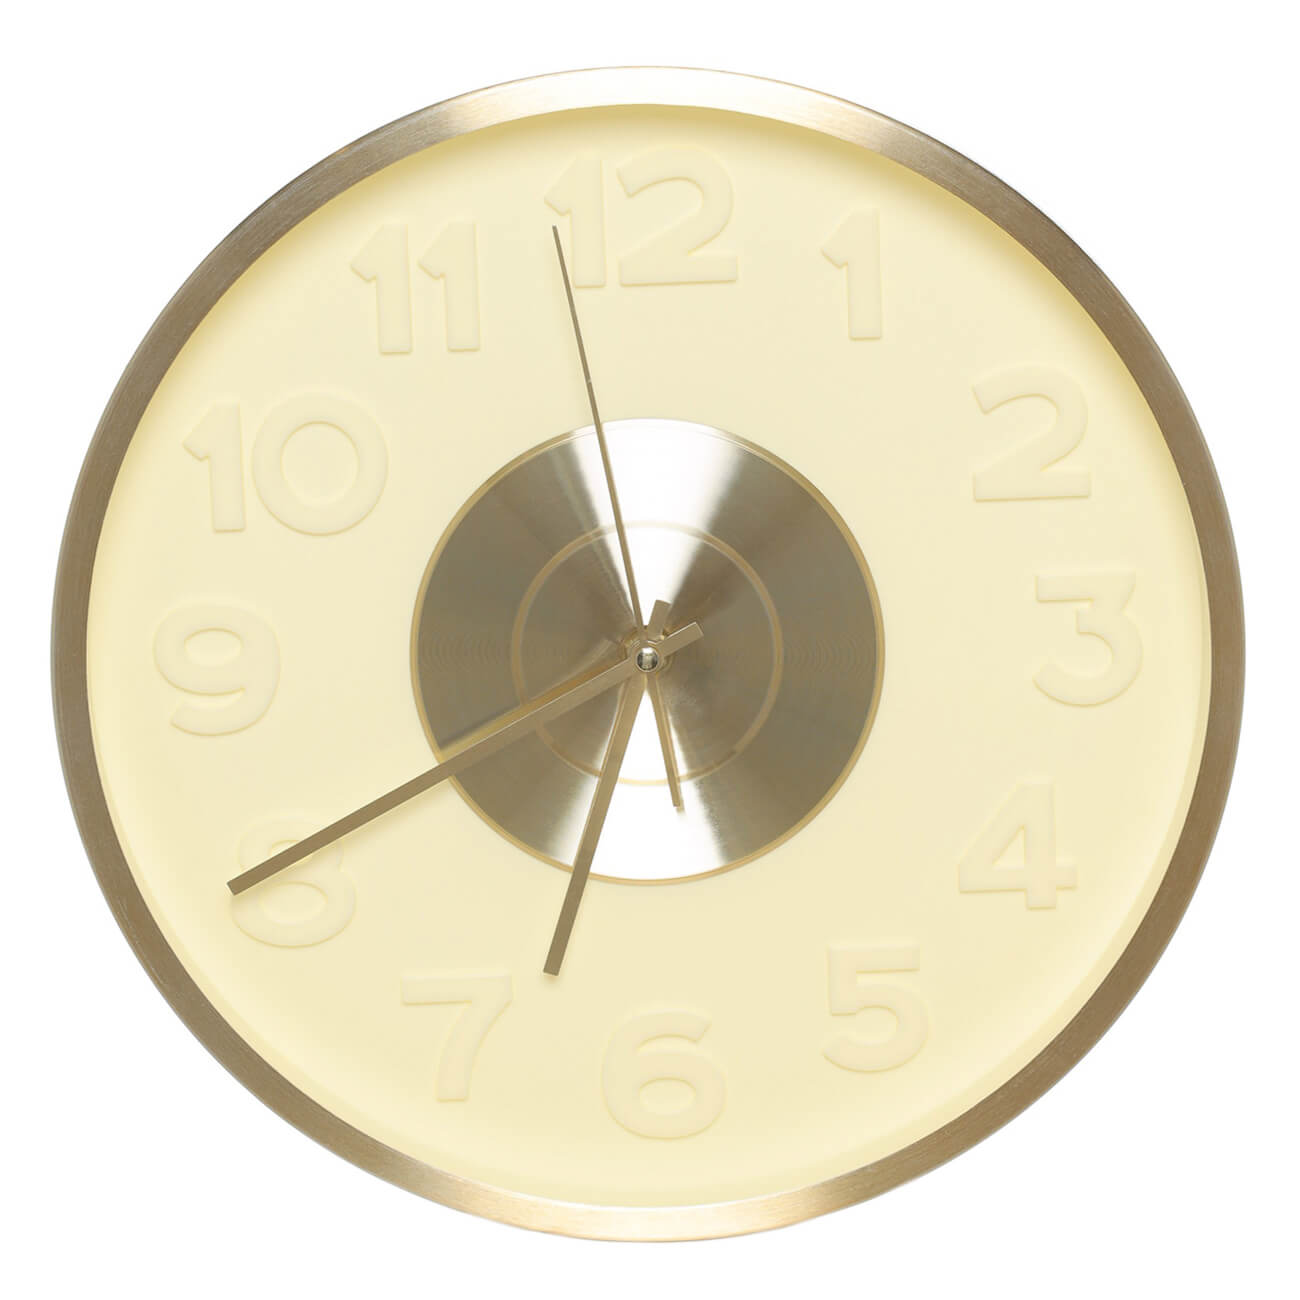 Часы настенные, 30 см, с подсветкой, пластик/стекло, круглые, золотистые, Fantastic gold - фото 1